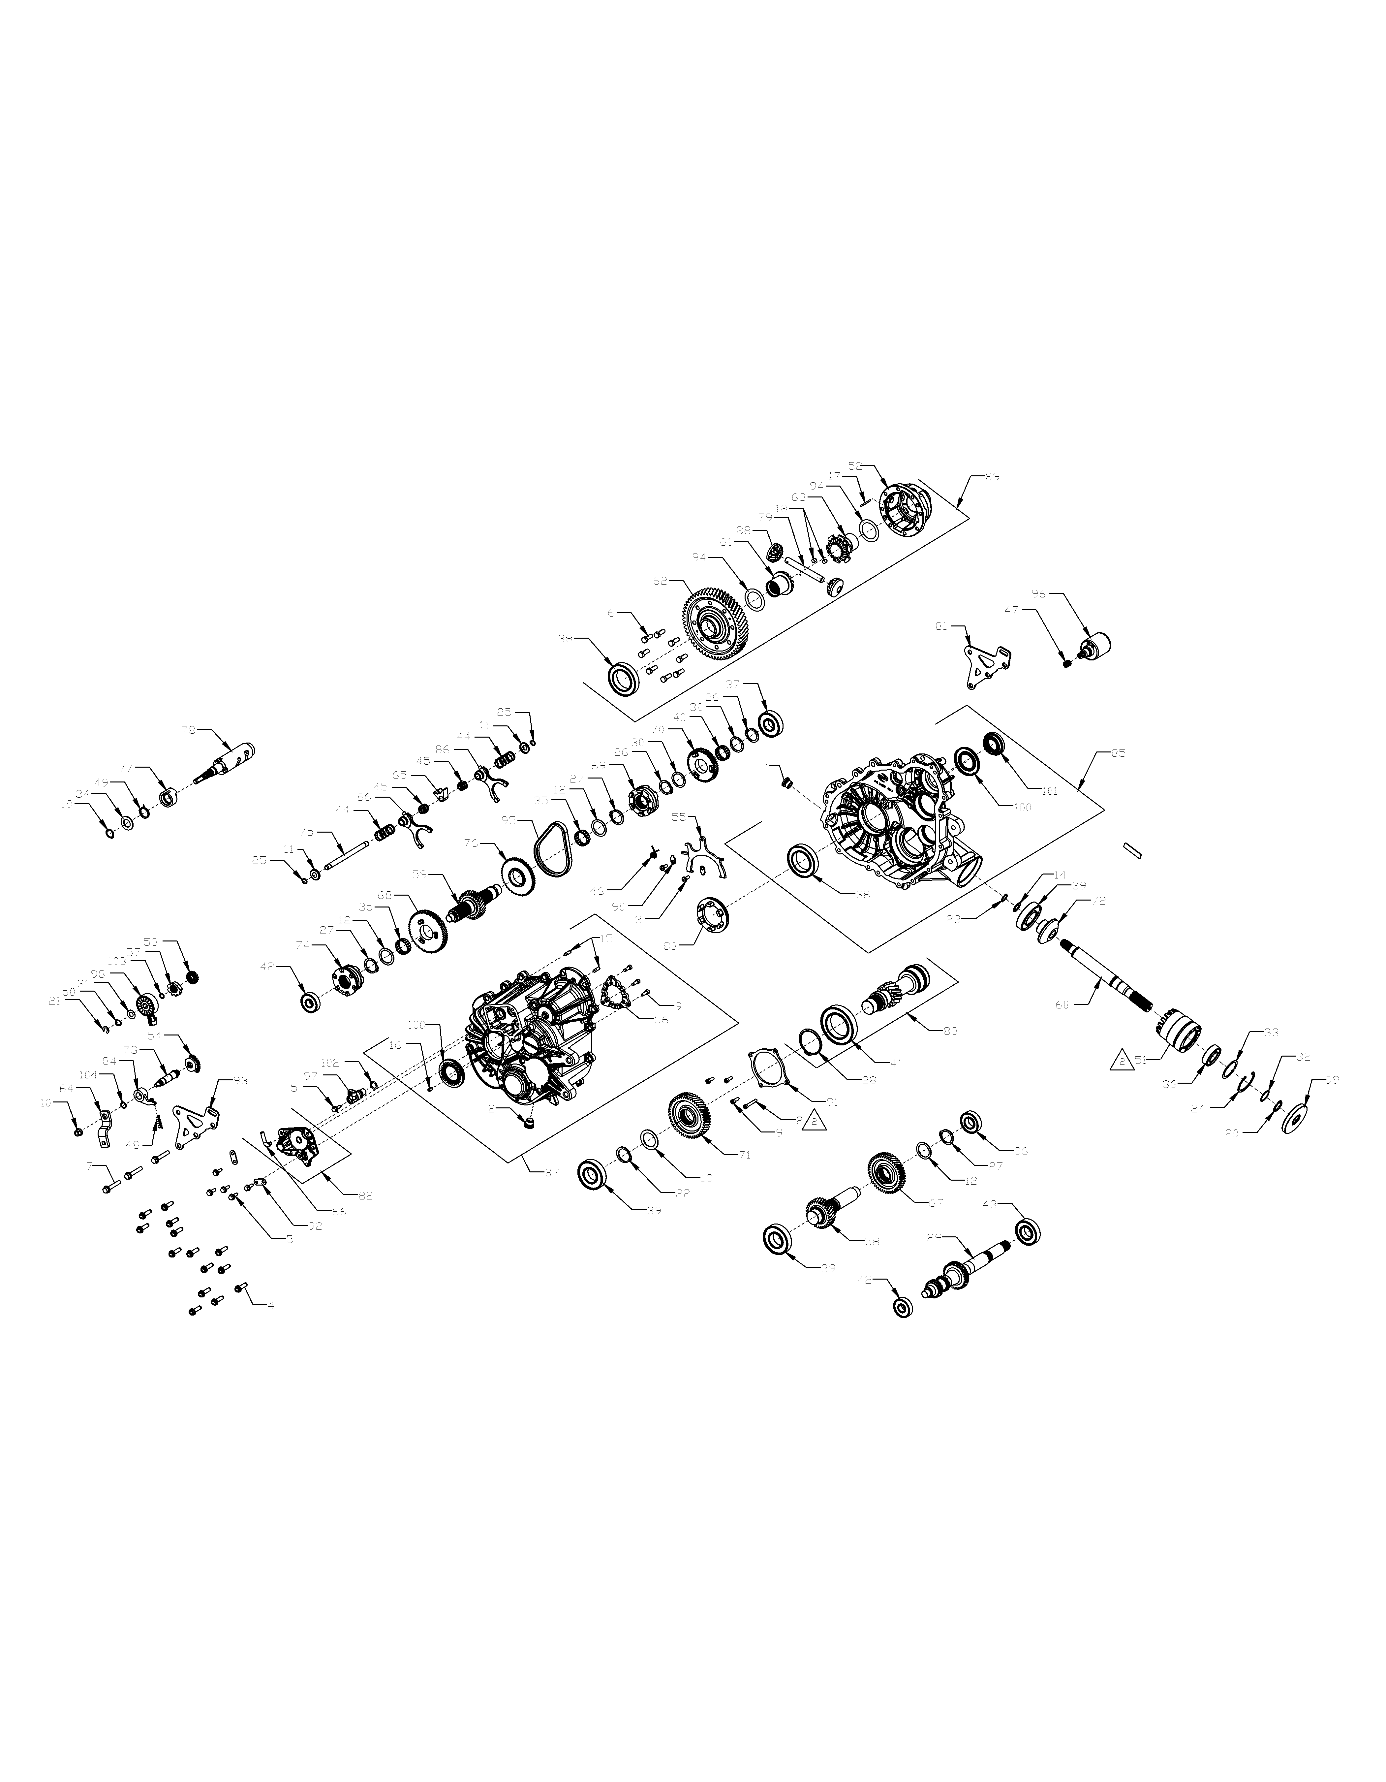 Foto diagrama Polaris que contem a peça 3236289